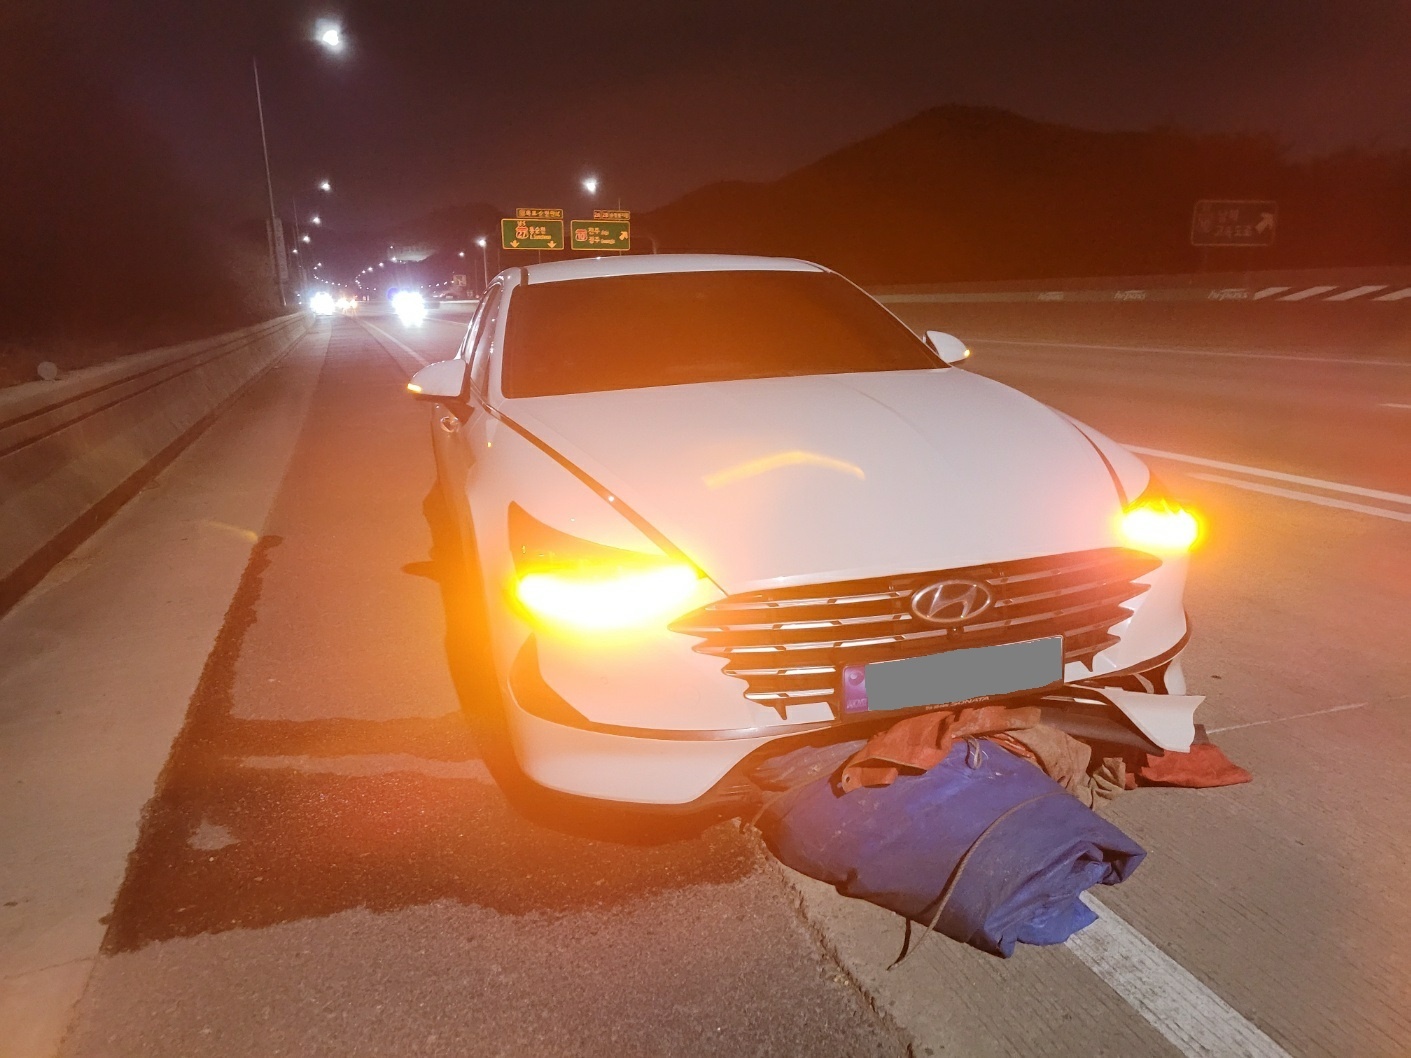 지난 2일 오후 6시 10분쯤 순천~완주 고속도로의 동순천톨게이트 5㎞ 지점에서 도로에 떨어져 있는 2m크기의 화물차 덮개 천막을 들이받은 사고를 당한 소나타 차량